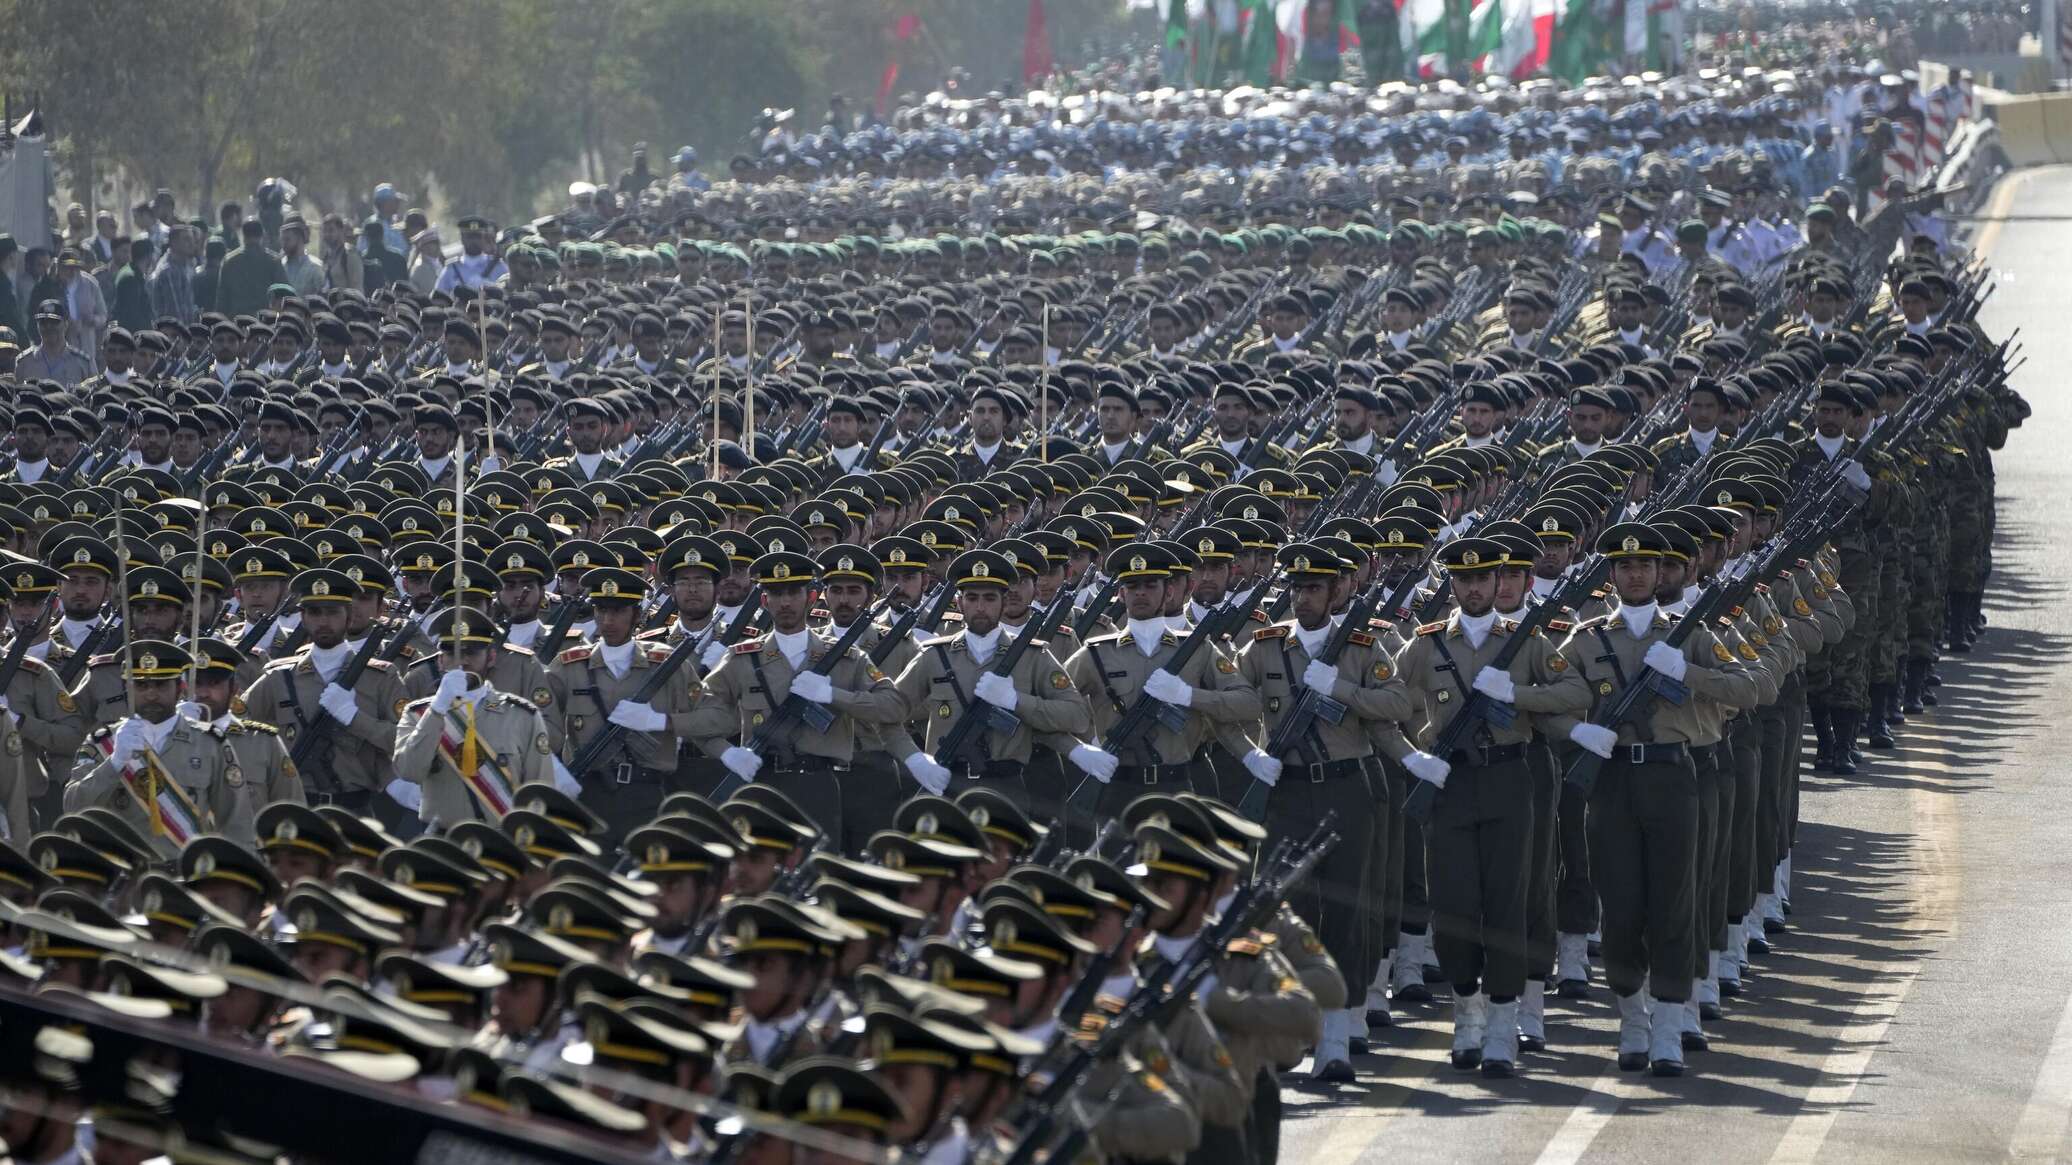 الجيش الإيراني: رد الجيش والحرس الثوري على أي اعتداء سيكون حاسما ومؤلما